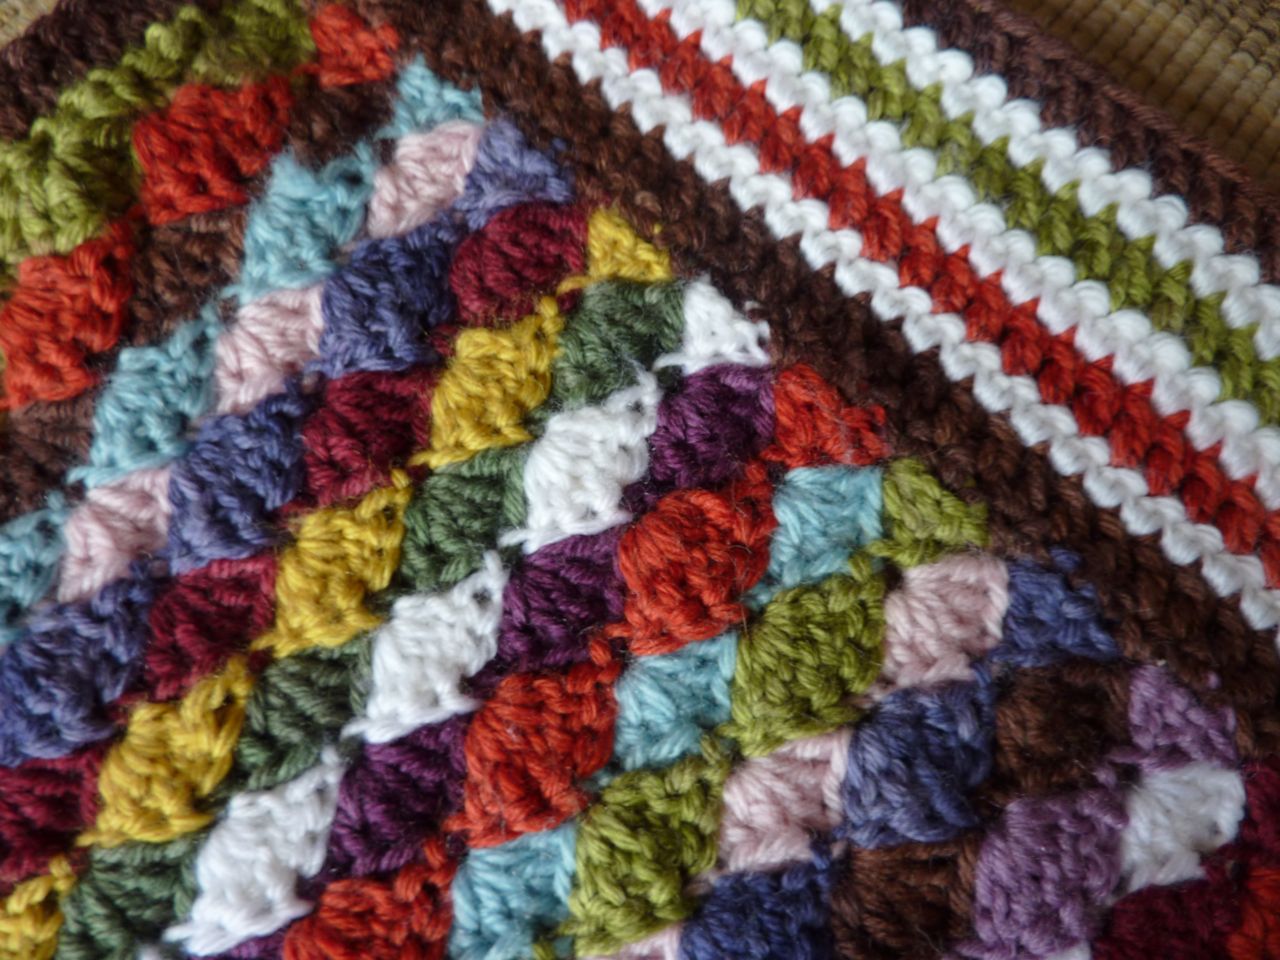 My Rose Valley: Crochet blanket - Voila!